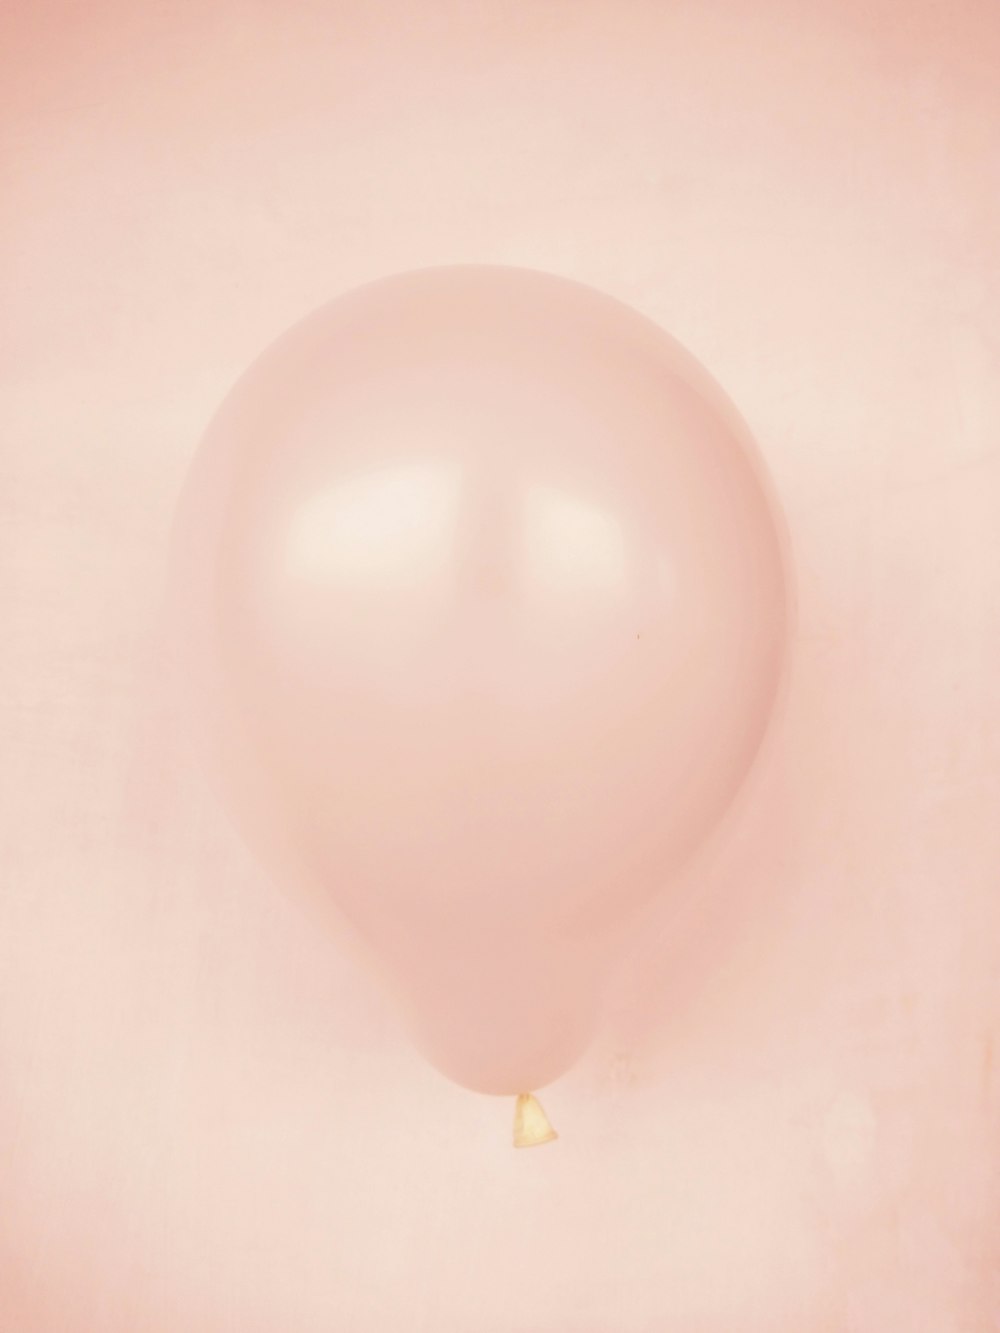 white balloon on white surface